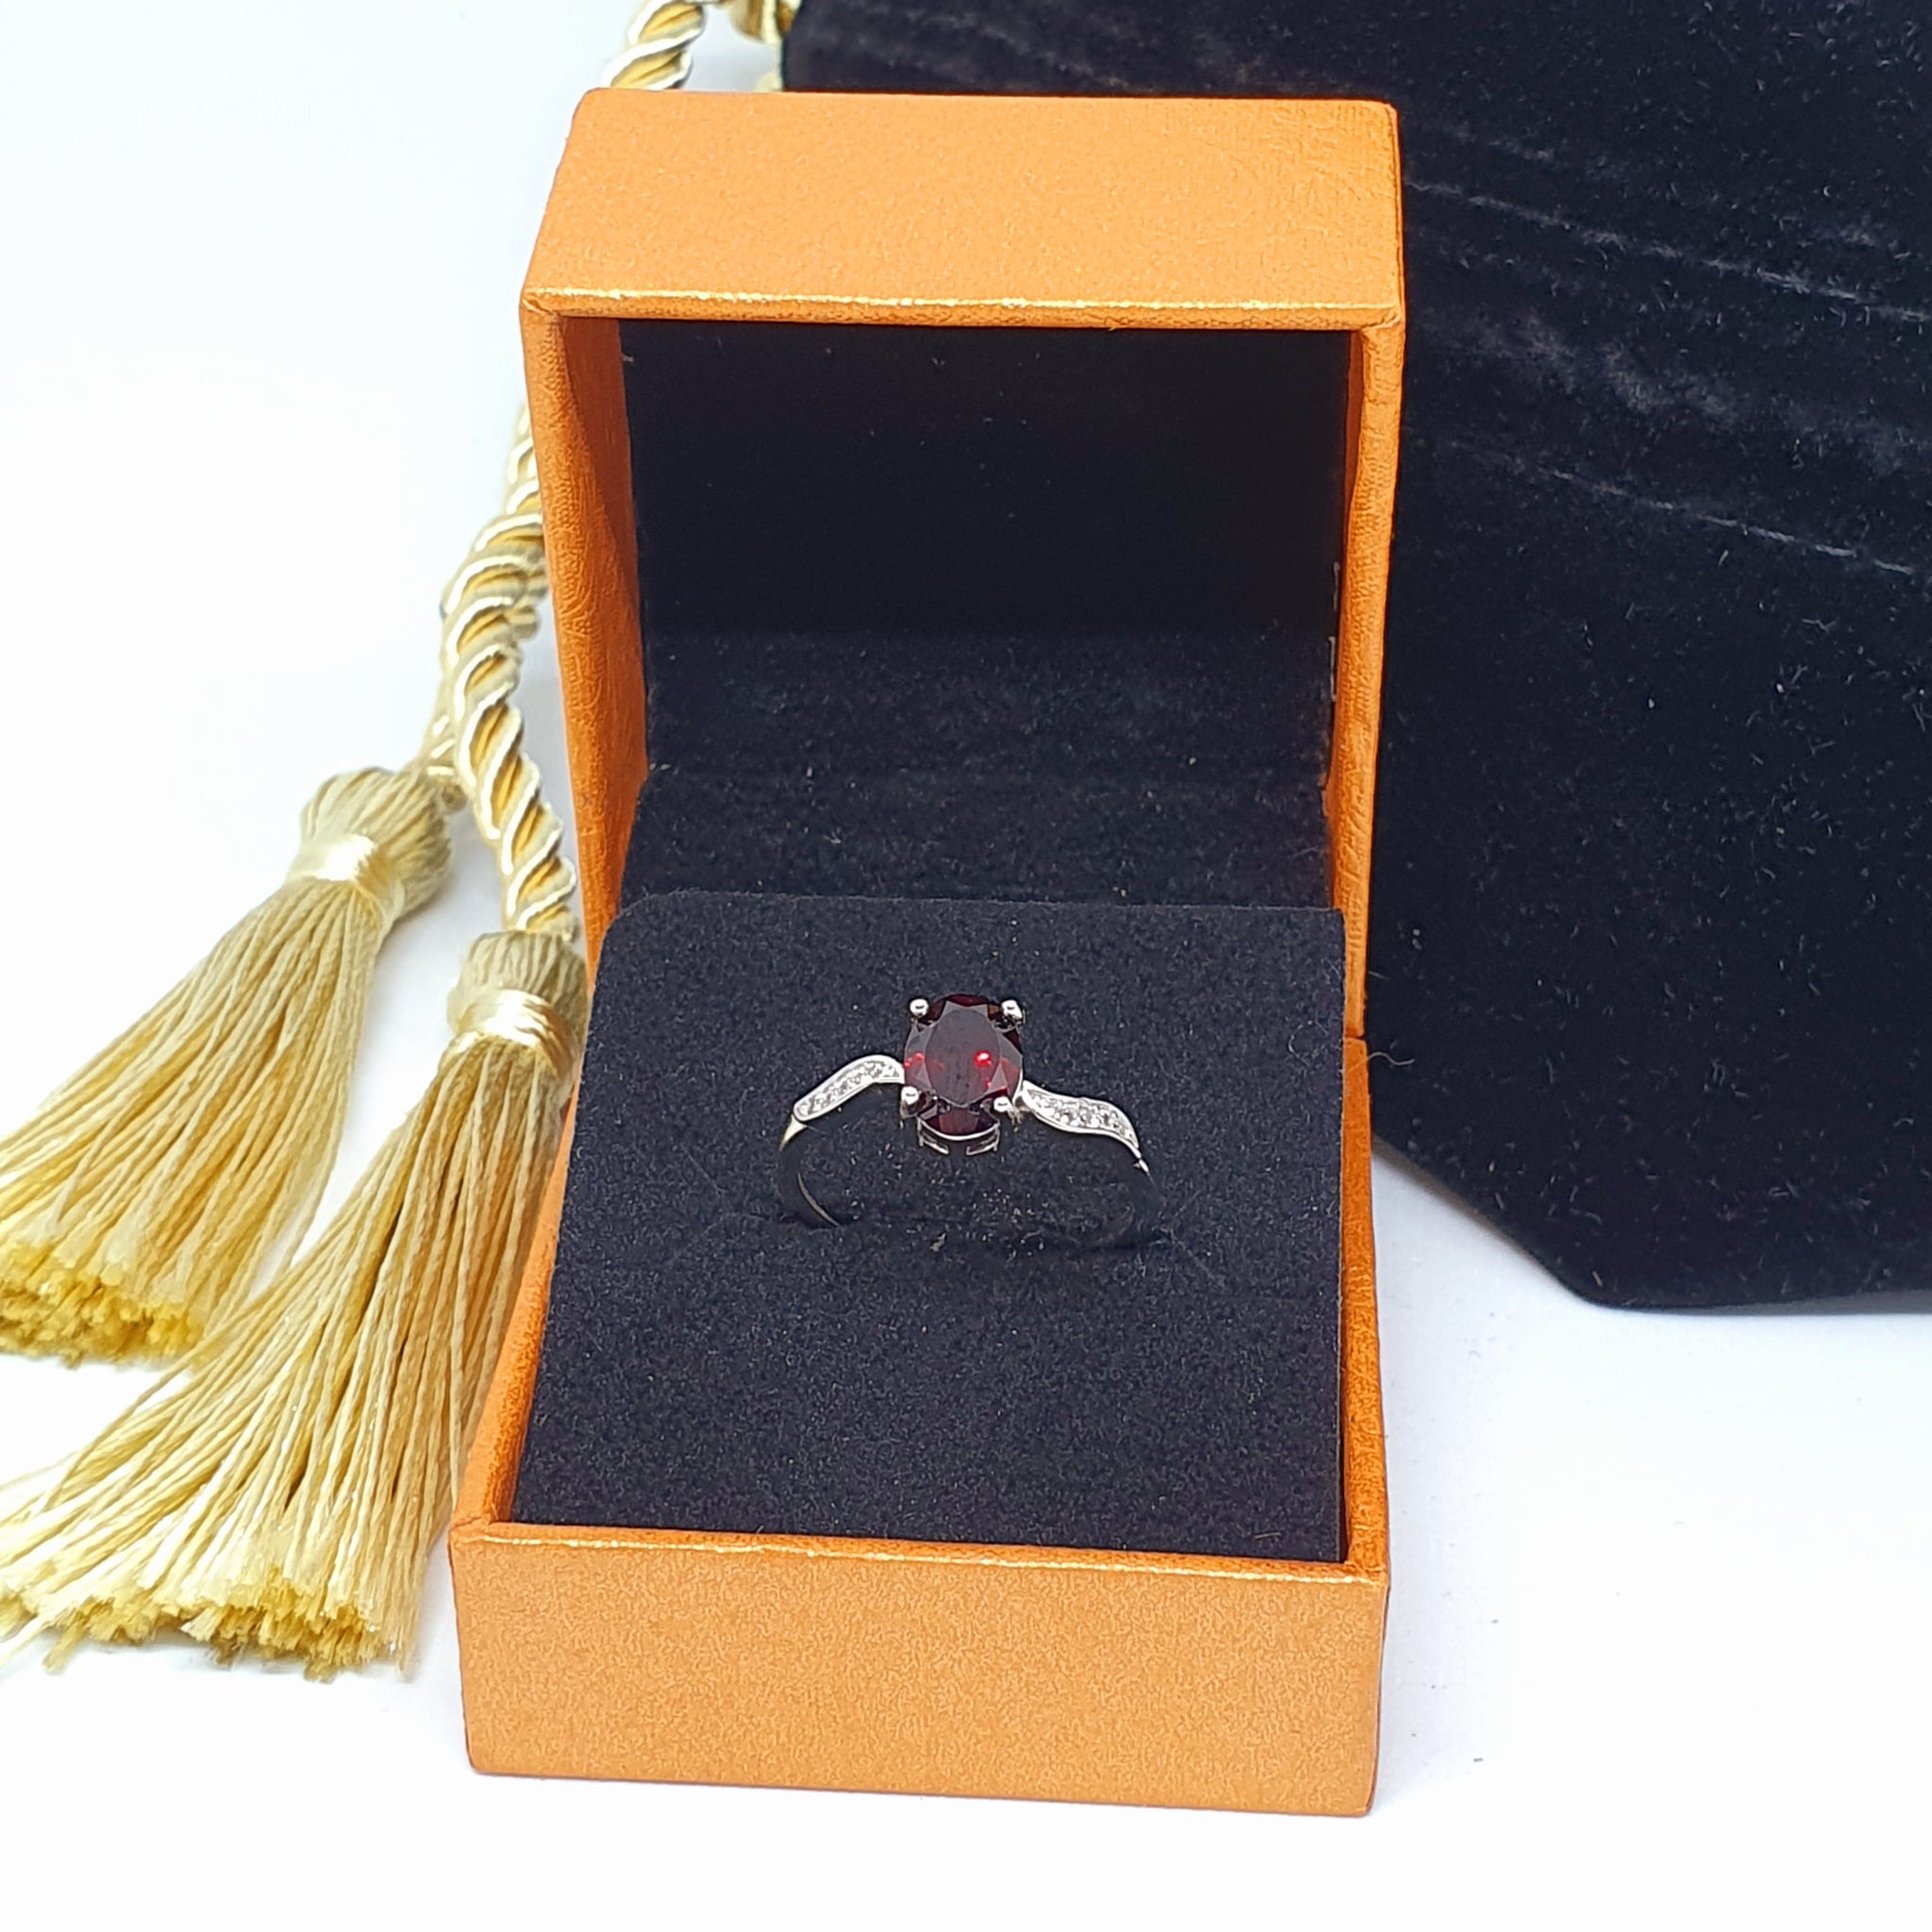 R0034 - Red Garnet Ring